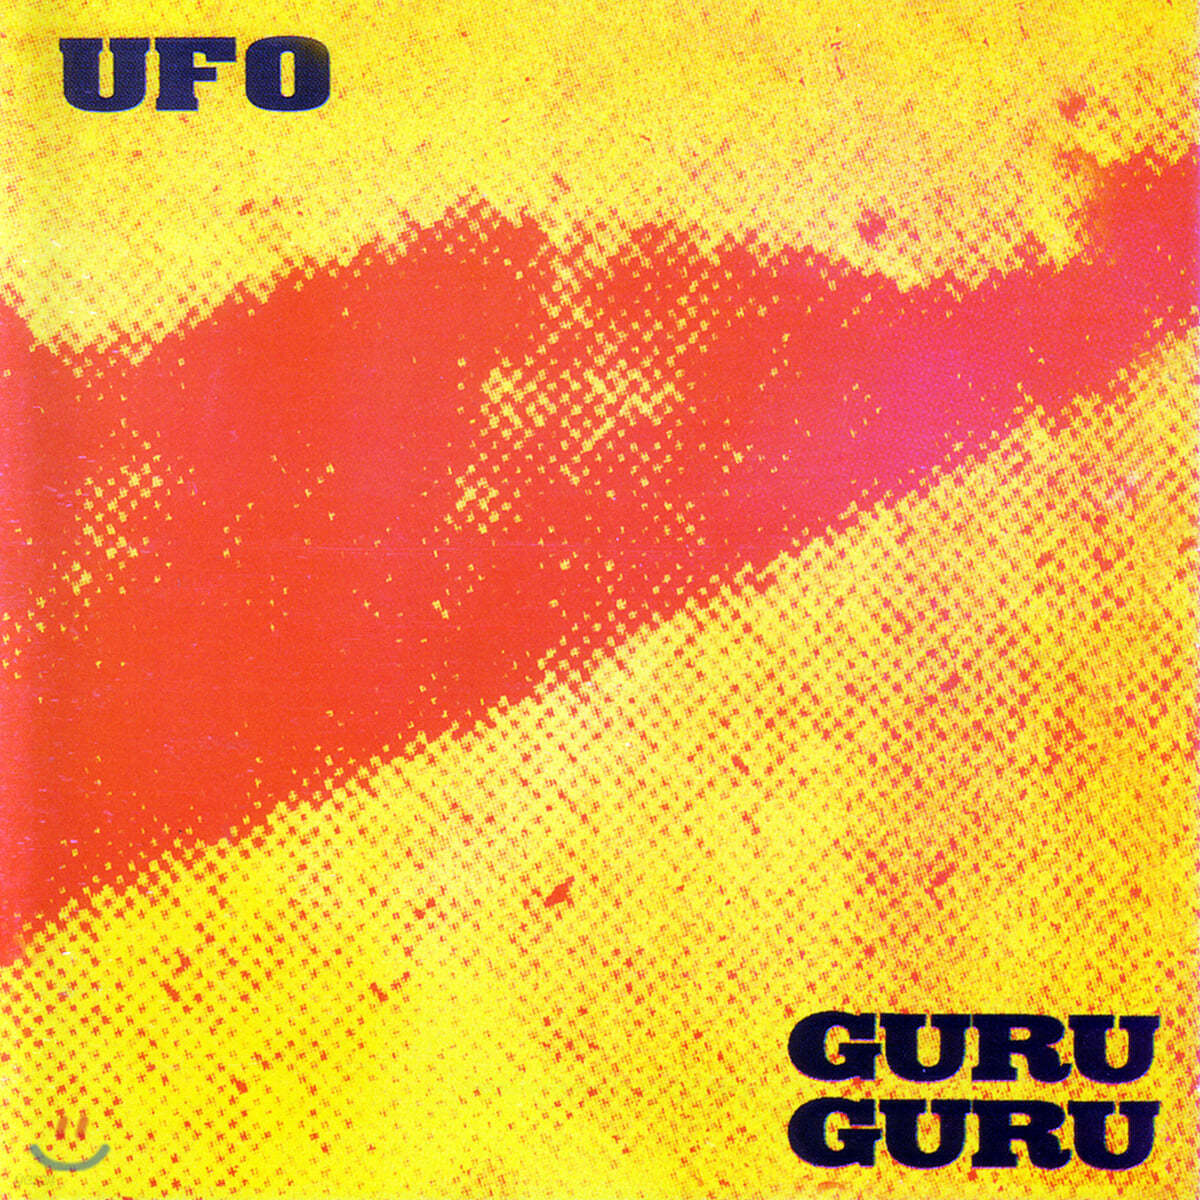 Guru Guru - UFO [LP]